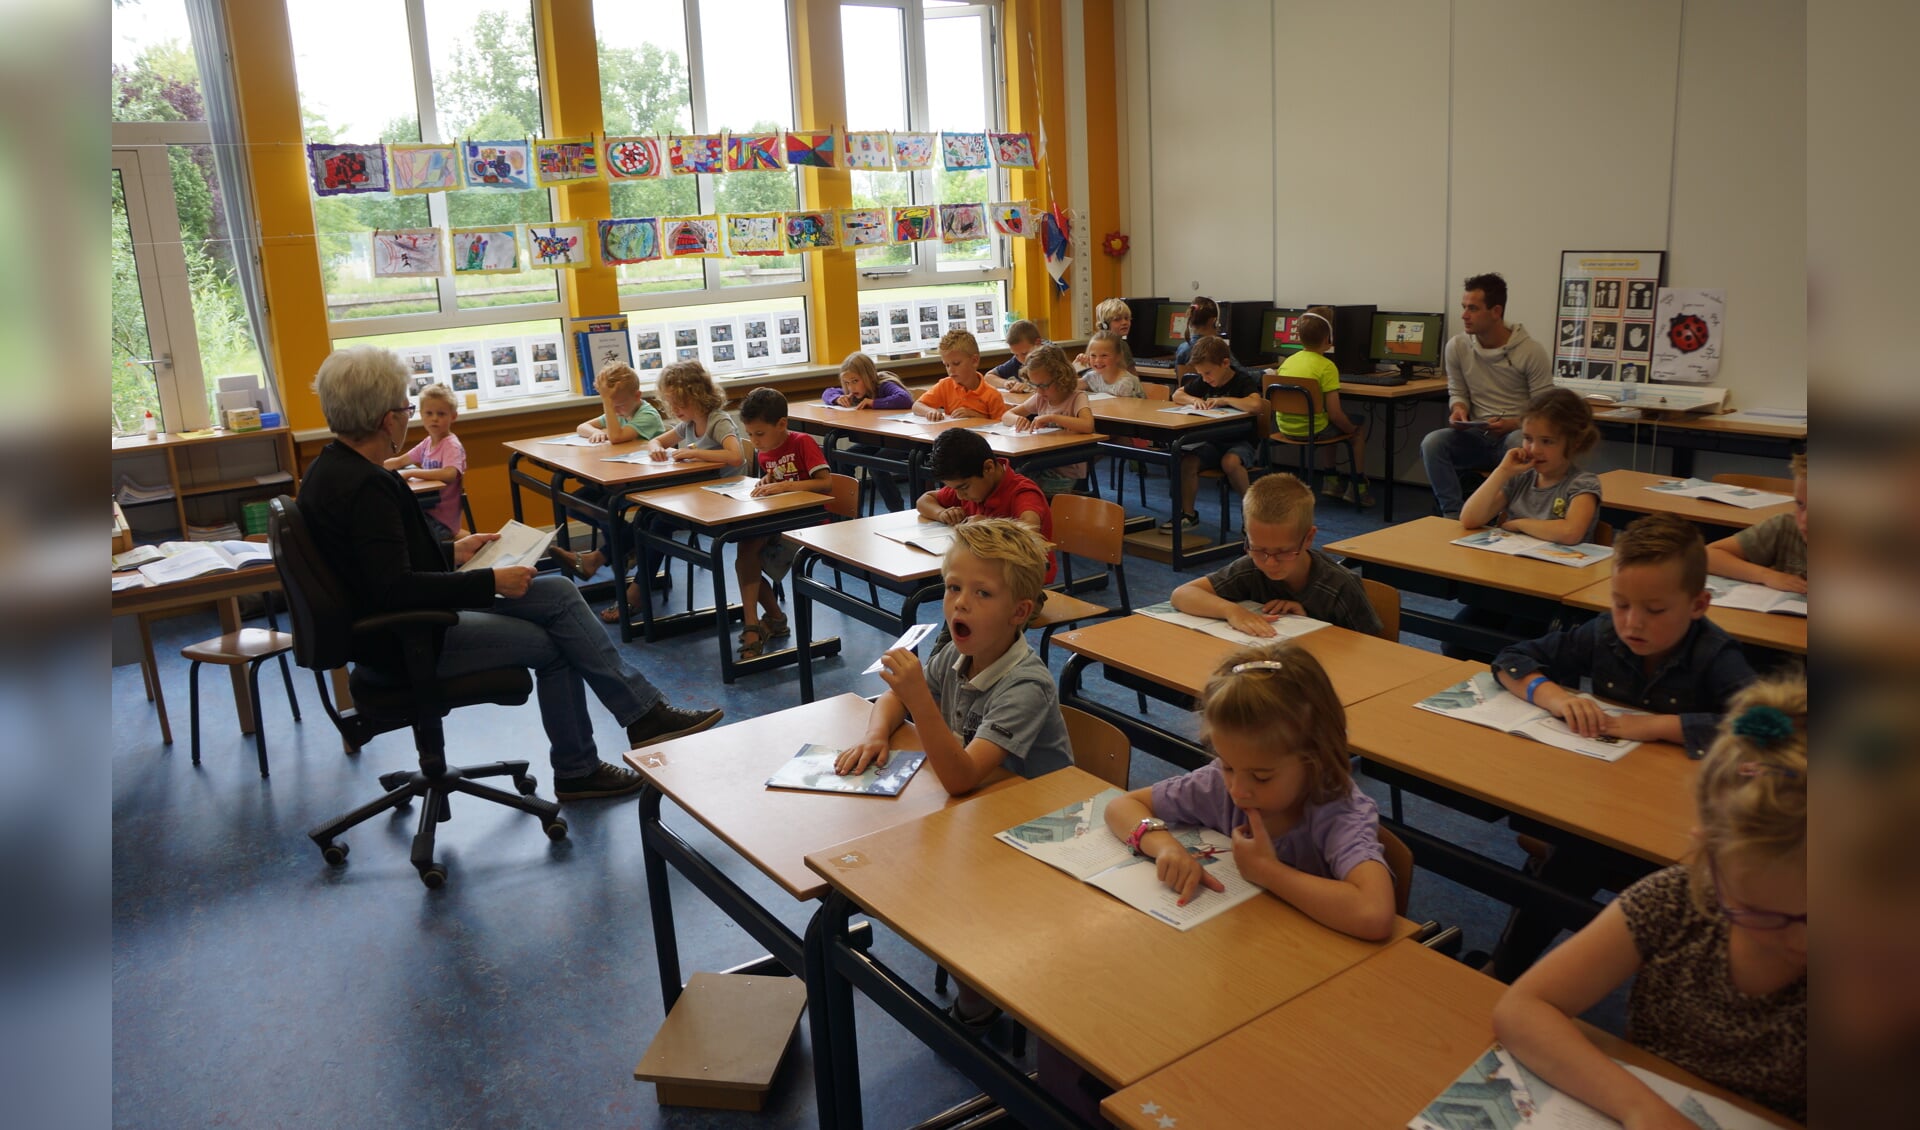 De basisschool in Eerschot